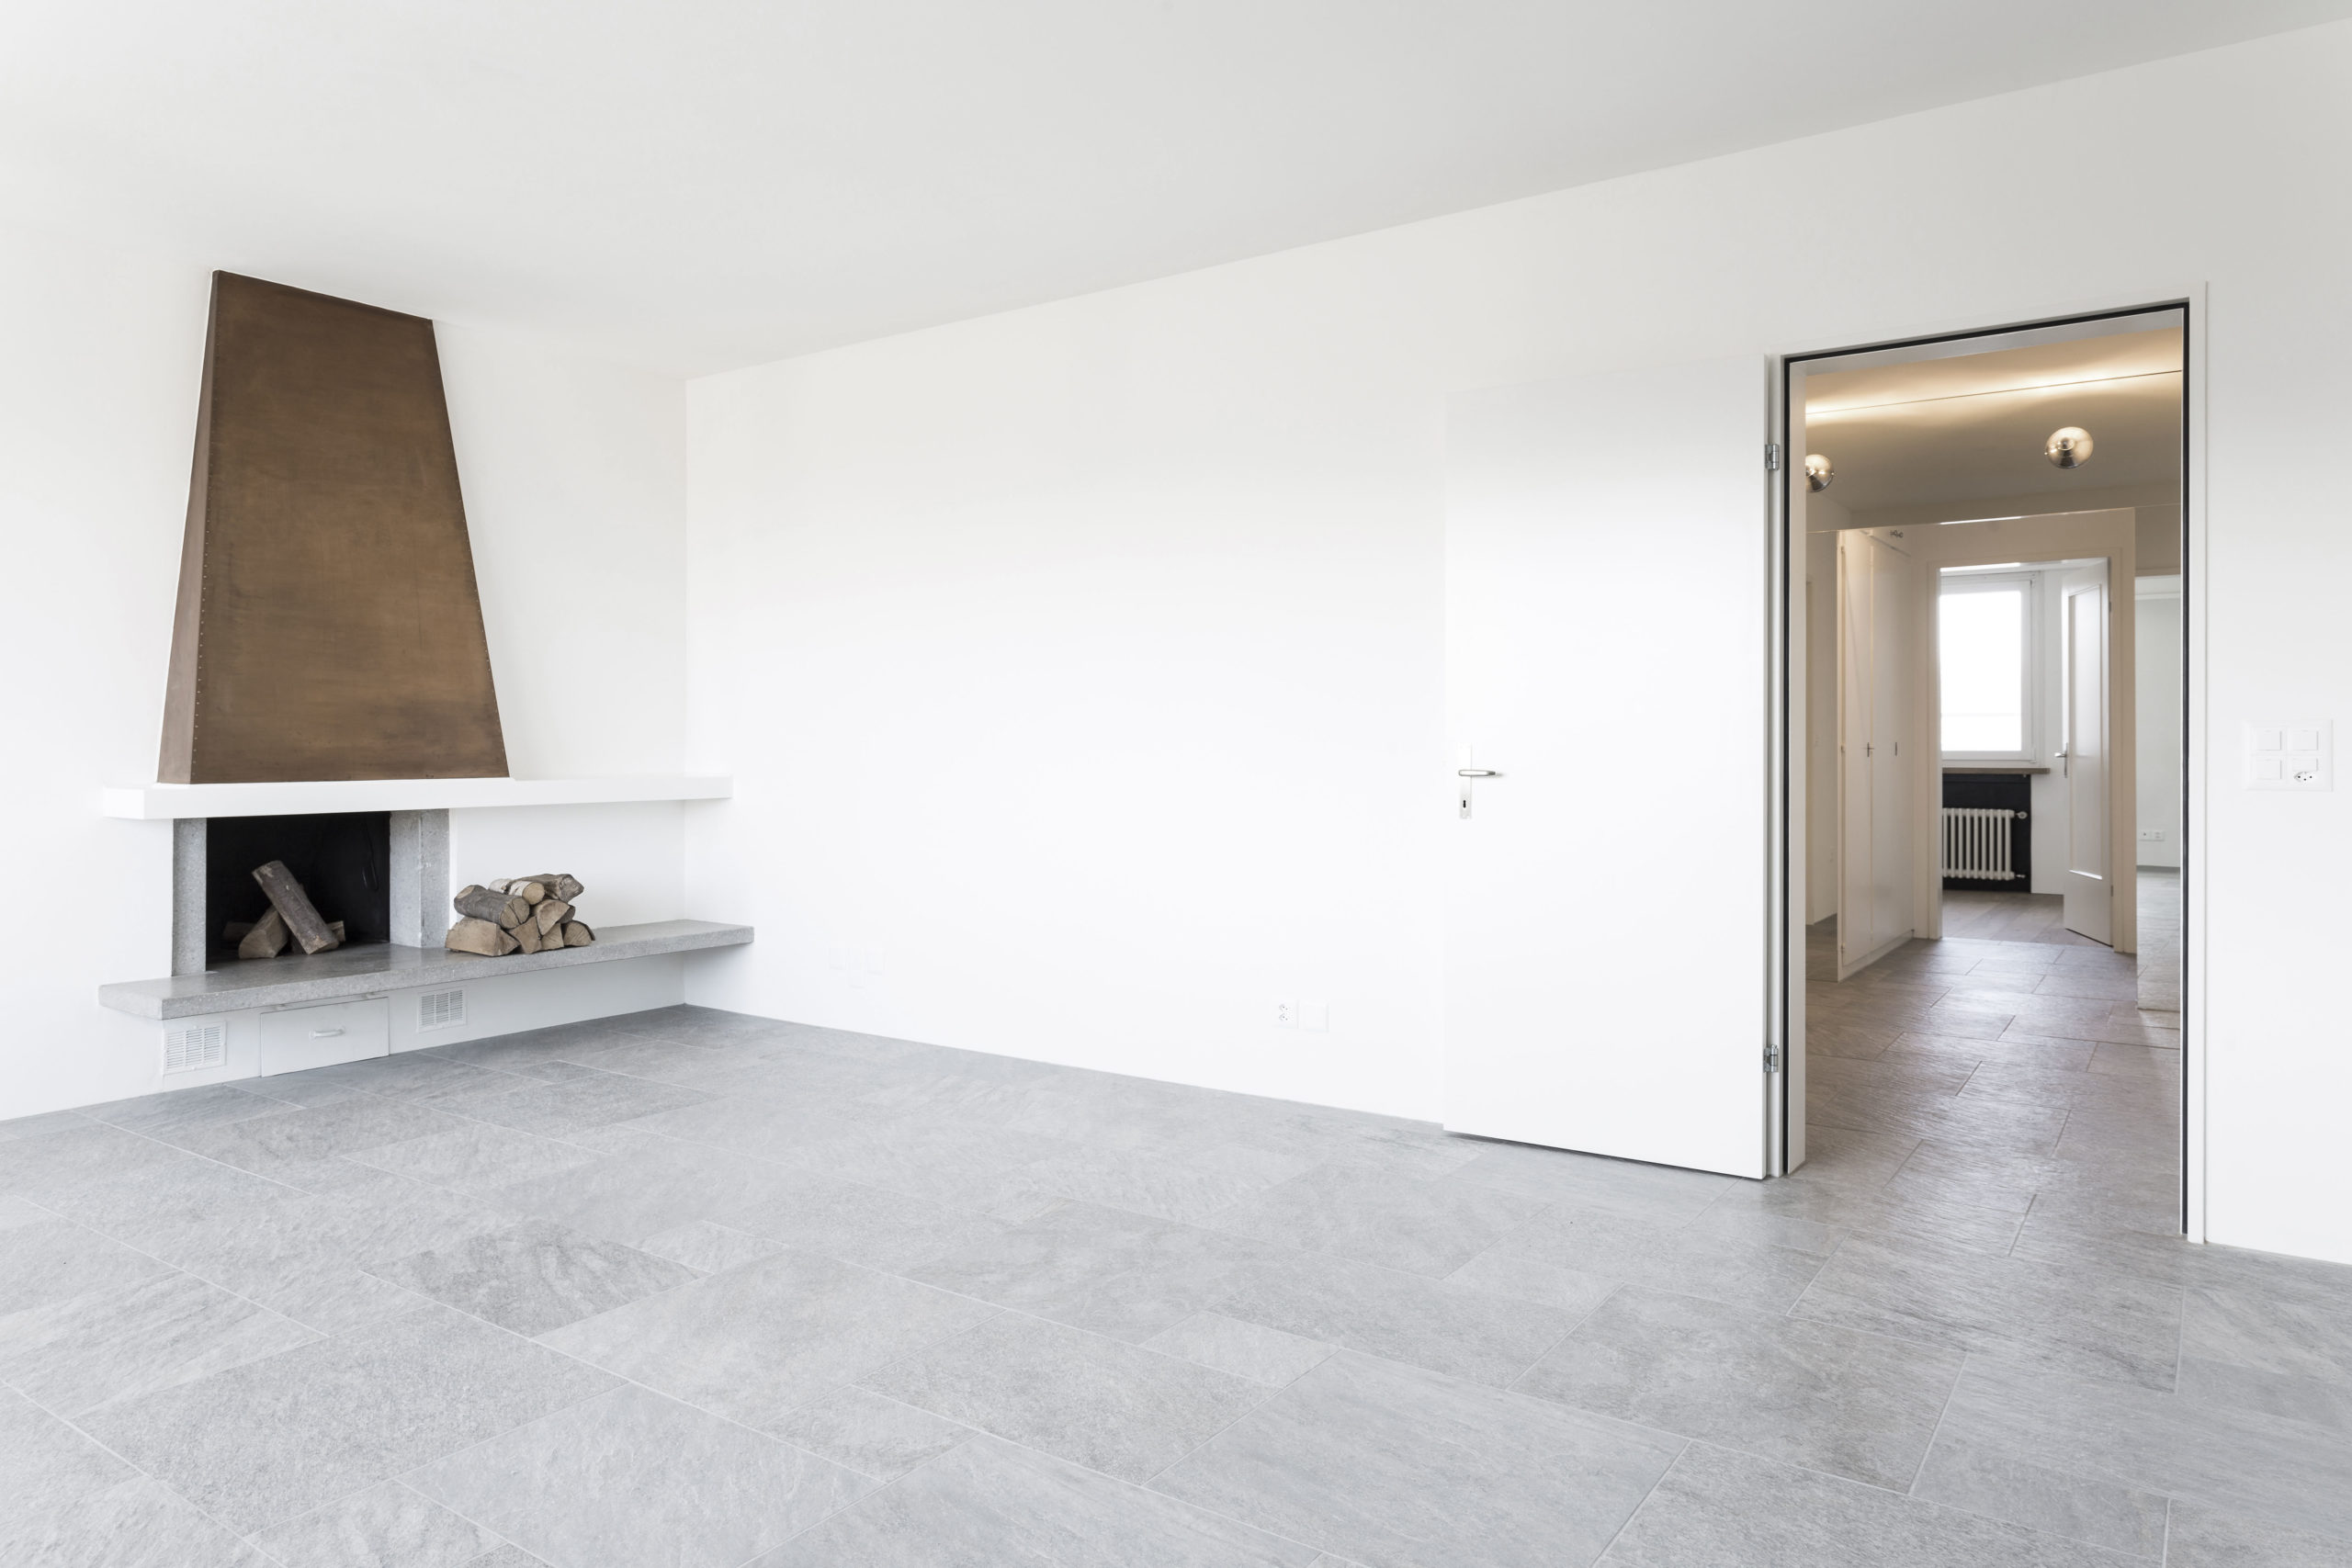 Modernes Wohnzimmer mit grauem Steinfußboden und weißer Wand, featuring eine minimalistische Kaminumrahmung mit Brennholz und eine offene Tür, die zu einem weiteren Raum führt.